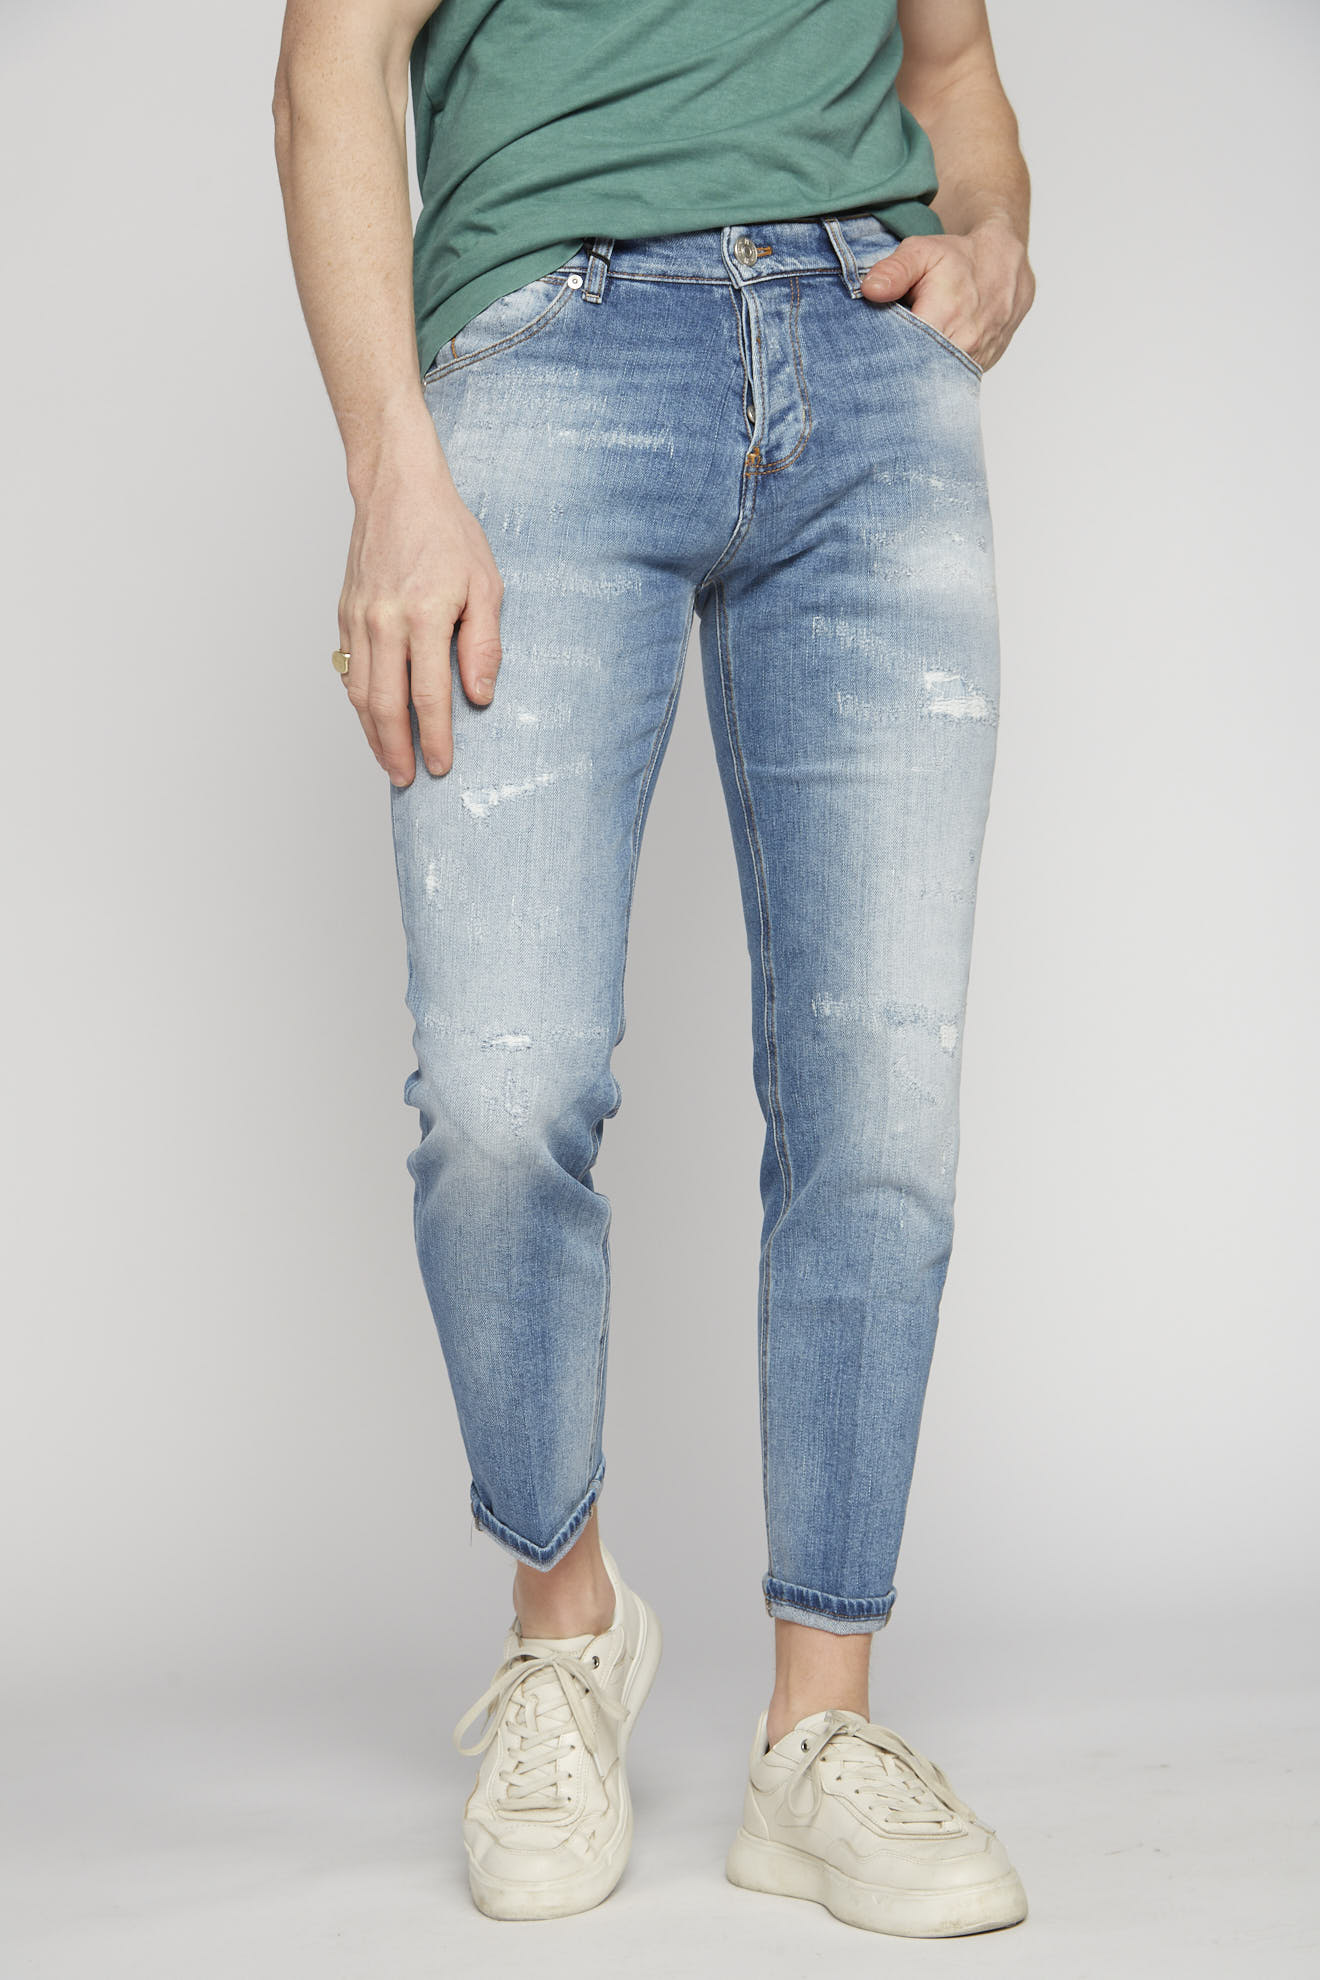 pt torino jeans denim destroyed cotton model front